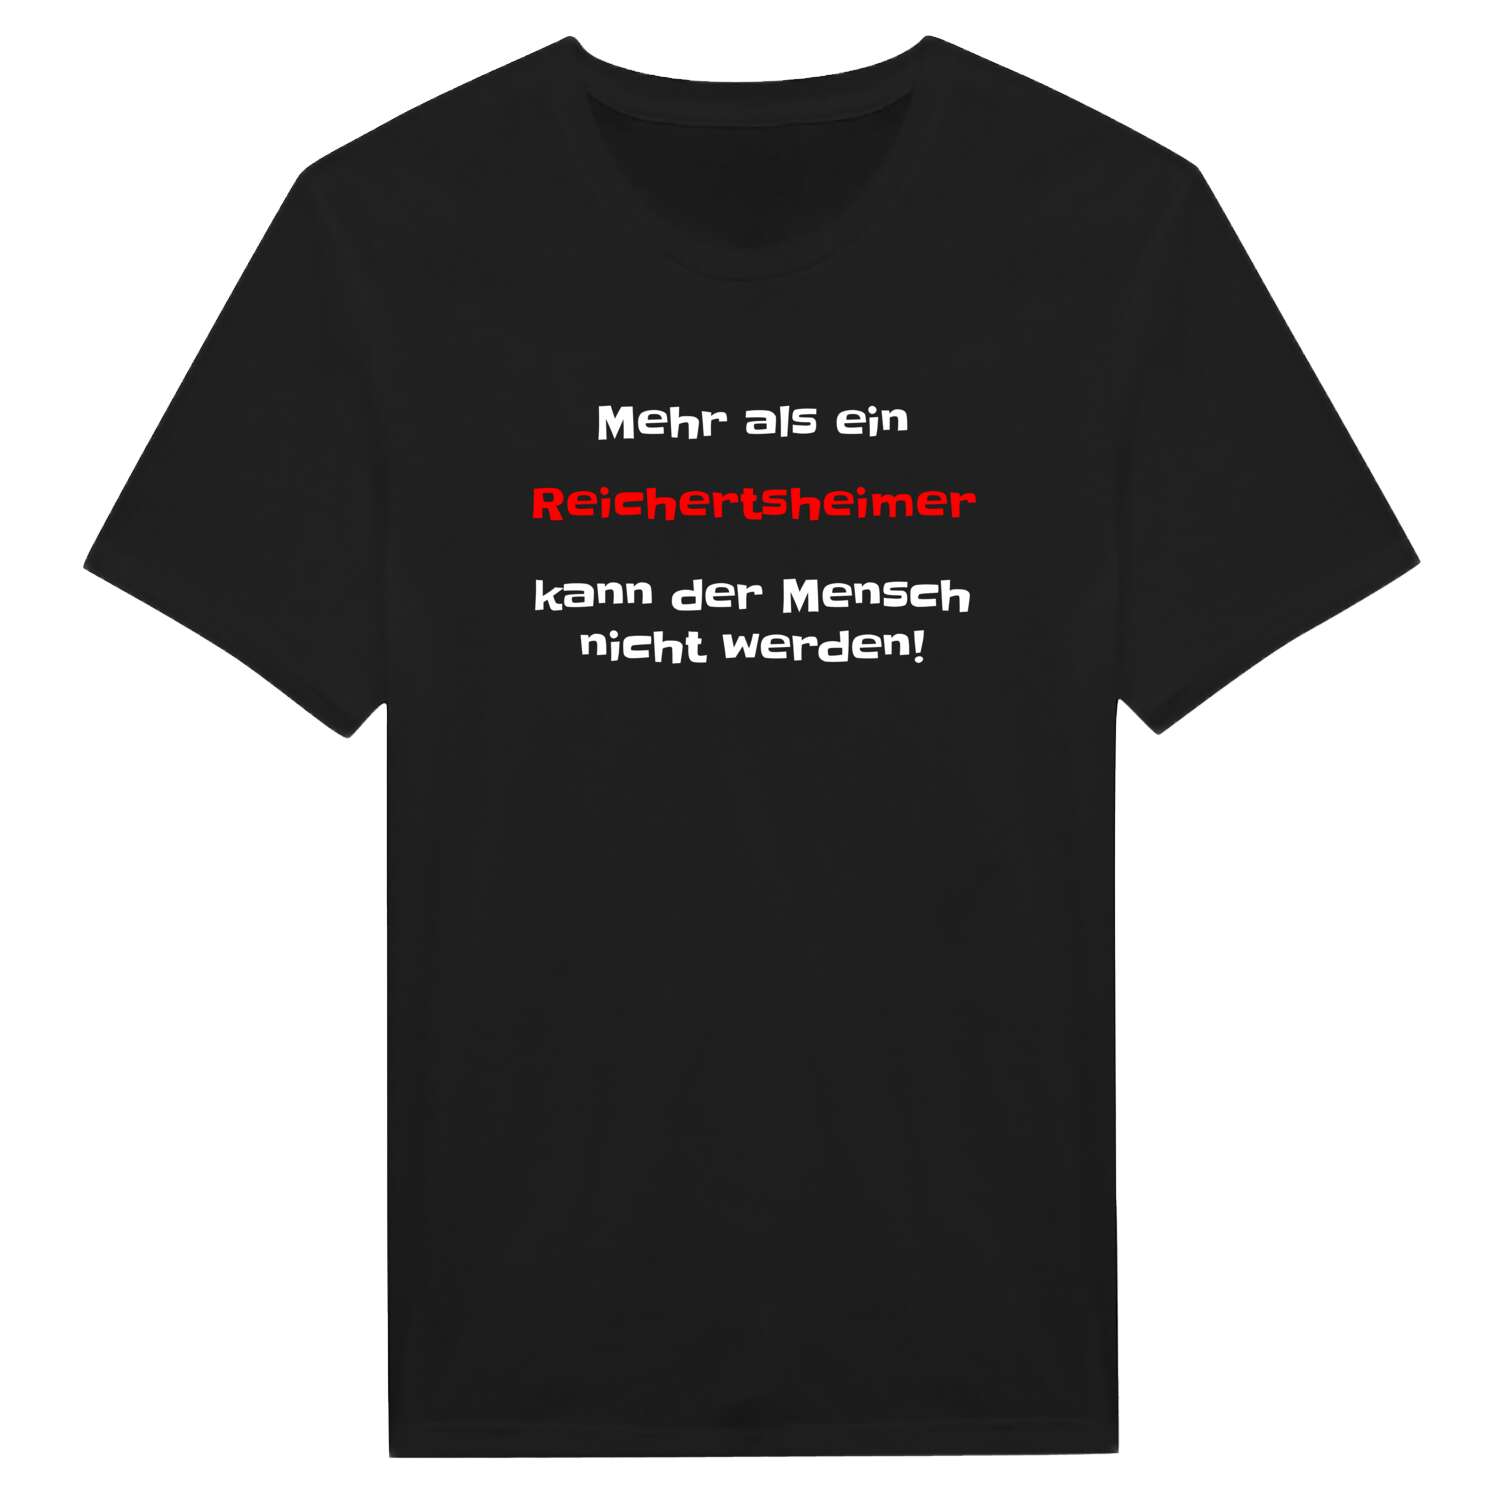 Reichertsheim T-Shirt »Mehr als ein«